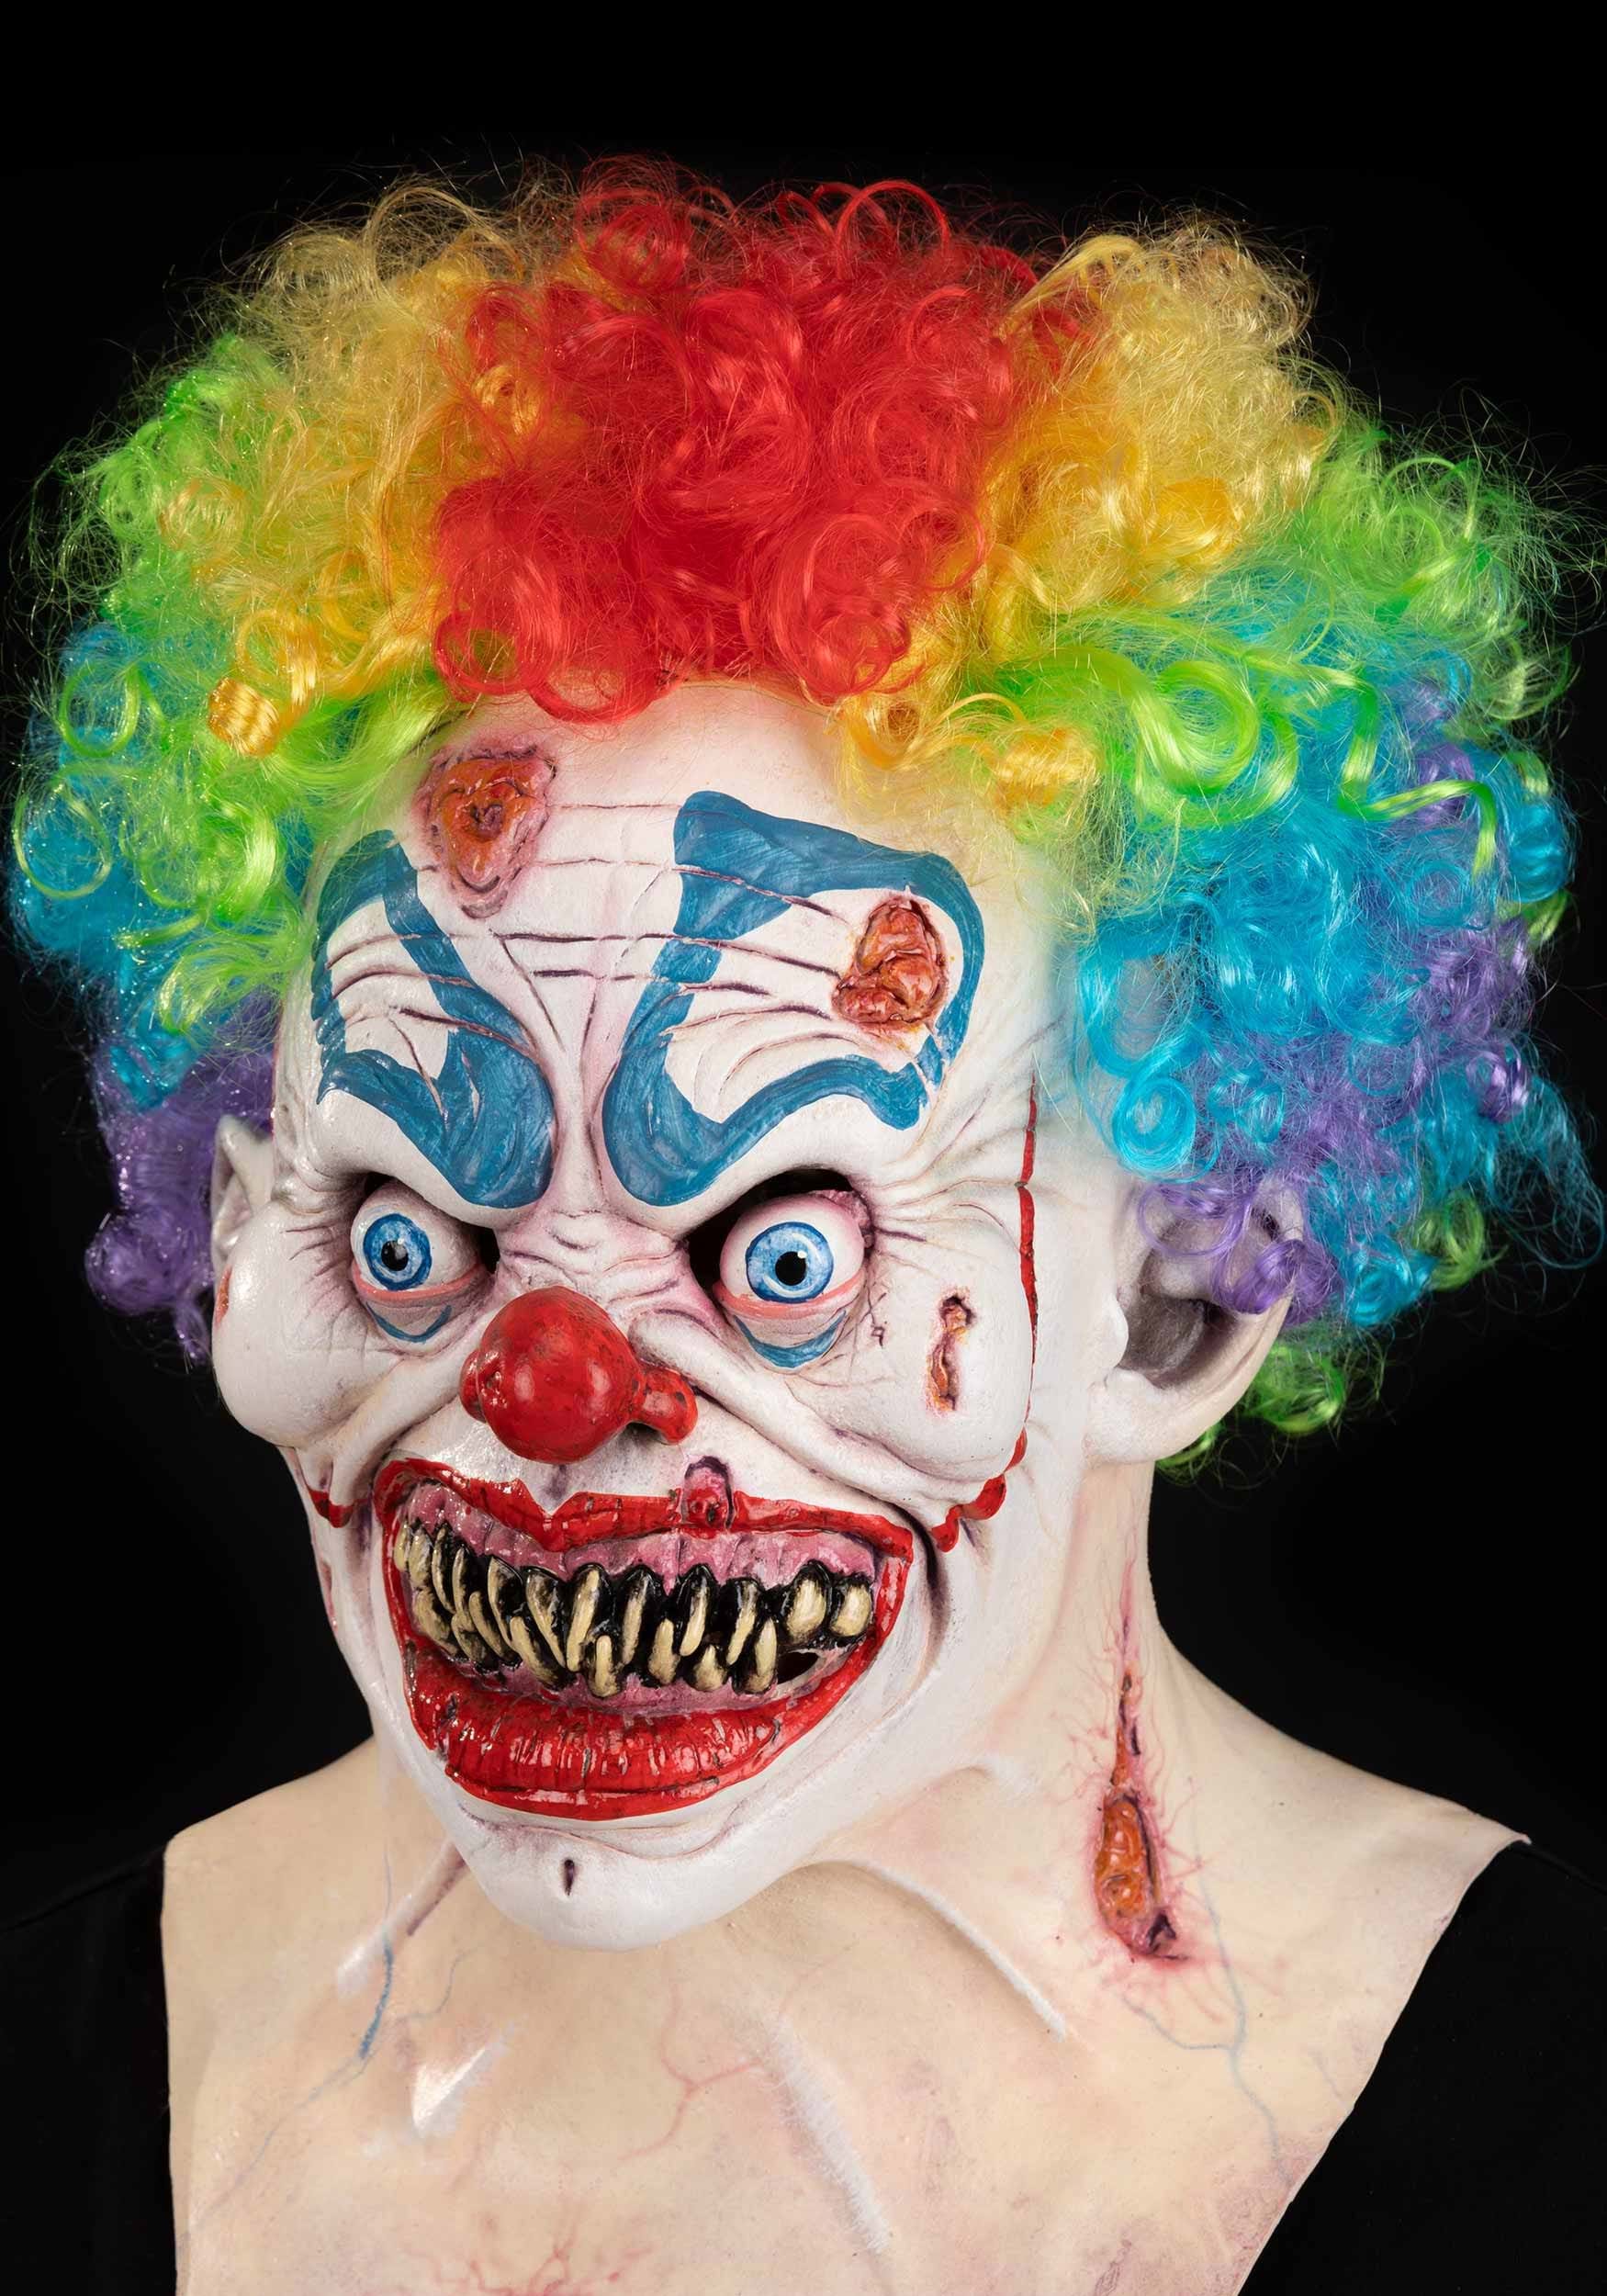 Vleien Ontwijken vastleggen Trix the Clown Mask for Adults